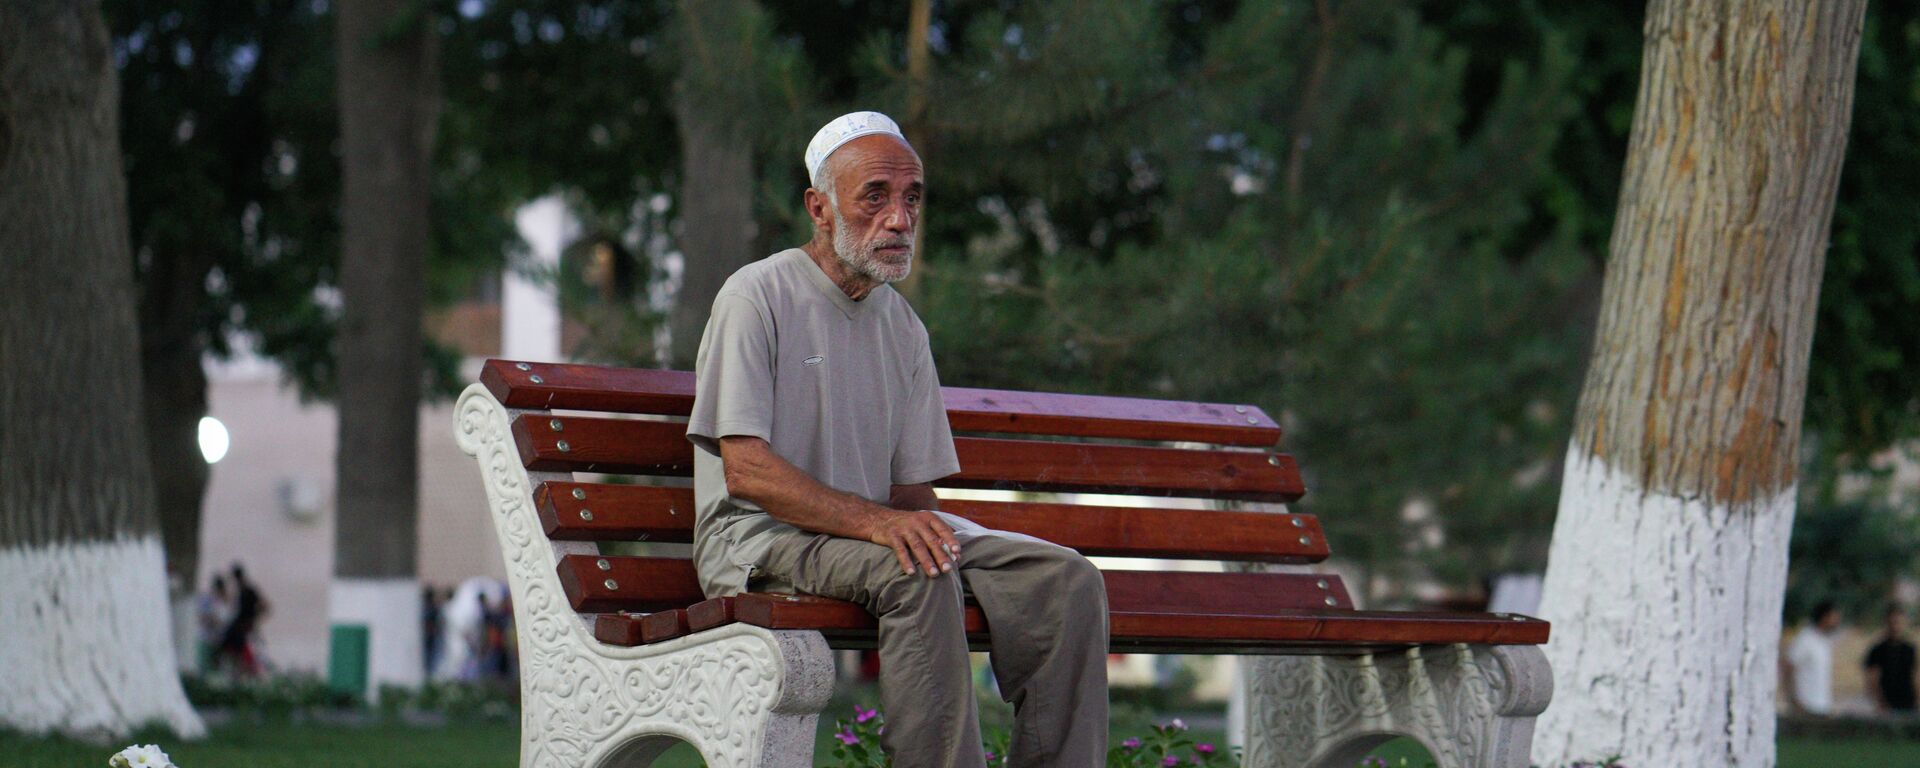 Пожилой человек сидит на скамейке, архивное фото - Sputnik Таджикистан, 1920, 21.07.2021